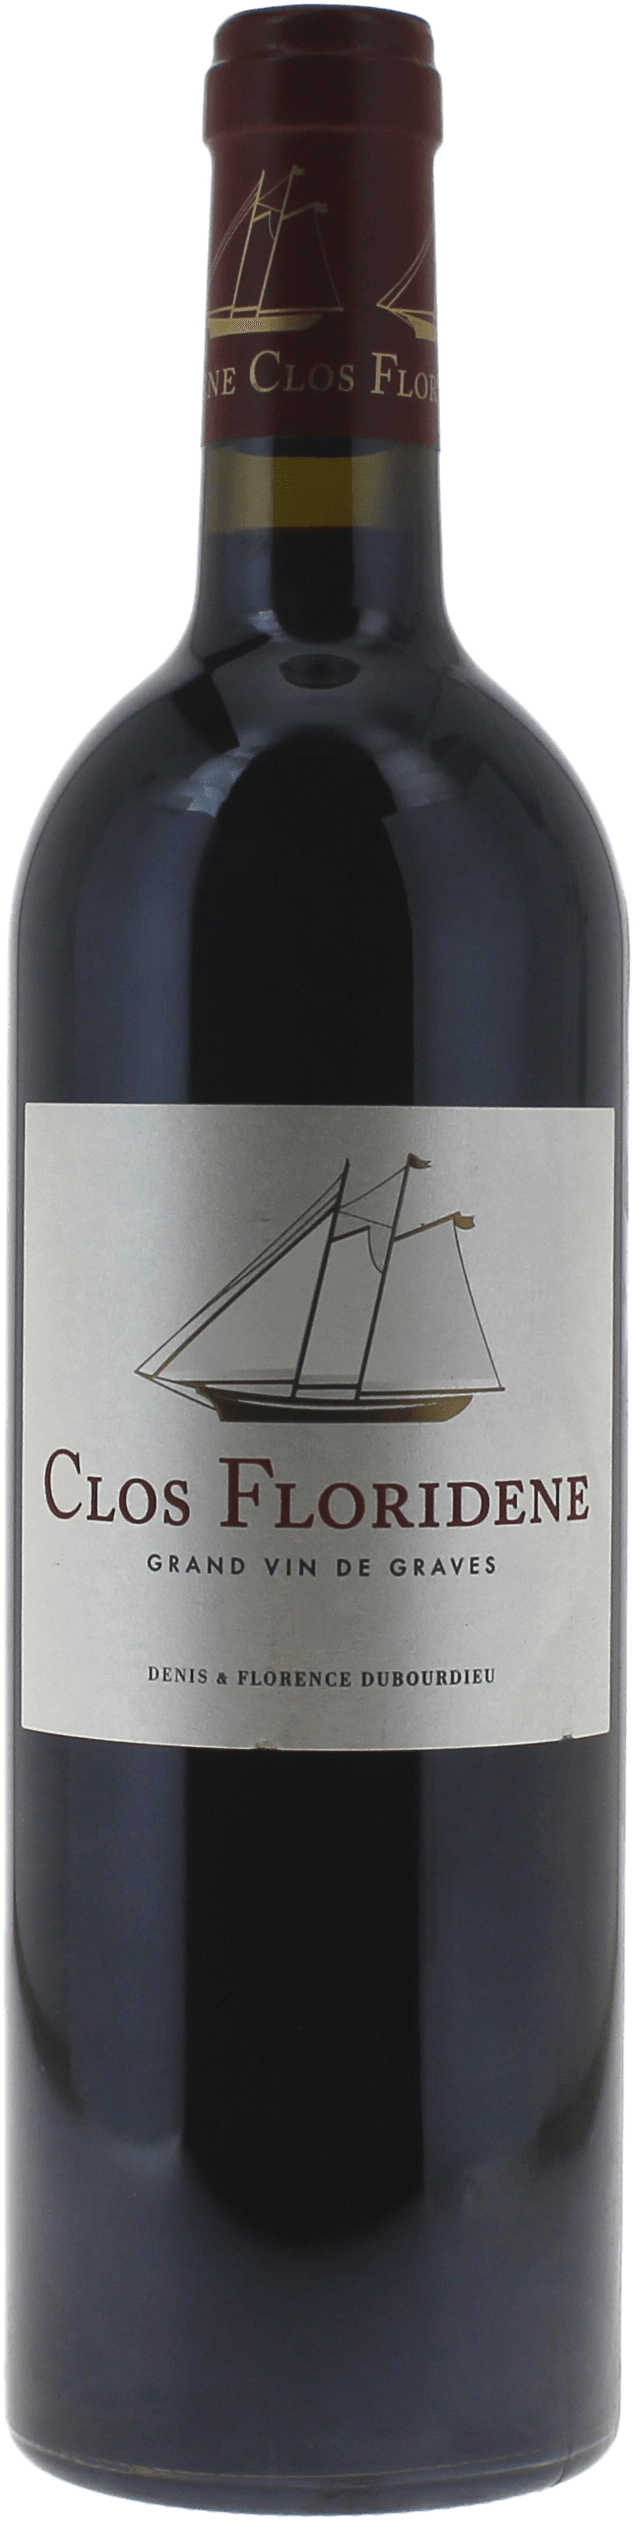 Clos floridne rouge 2019  Graves, Bordeaux rouge